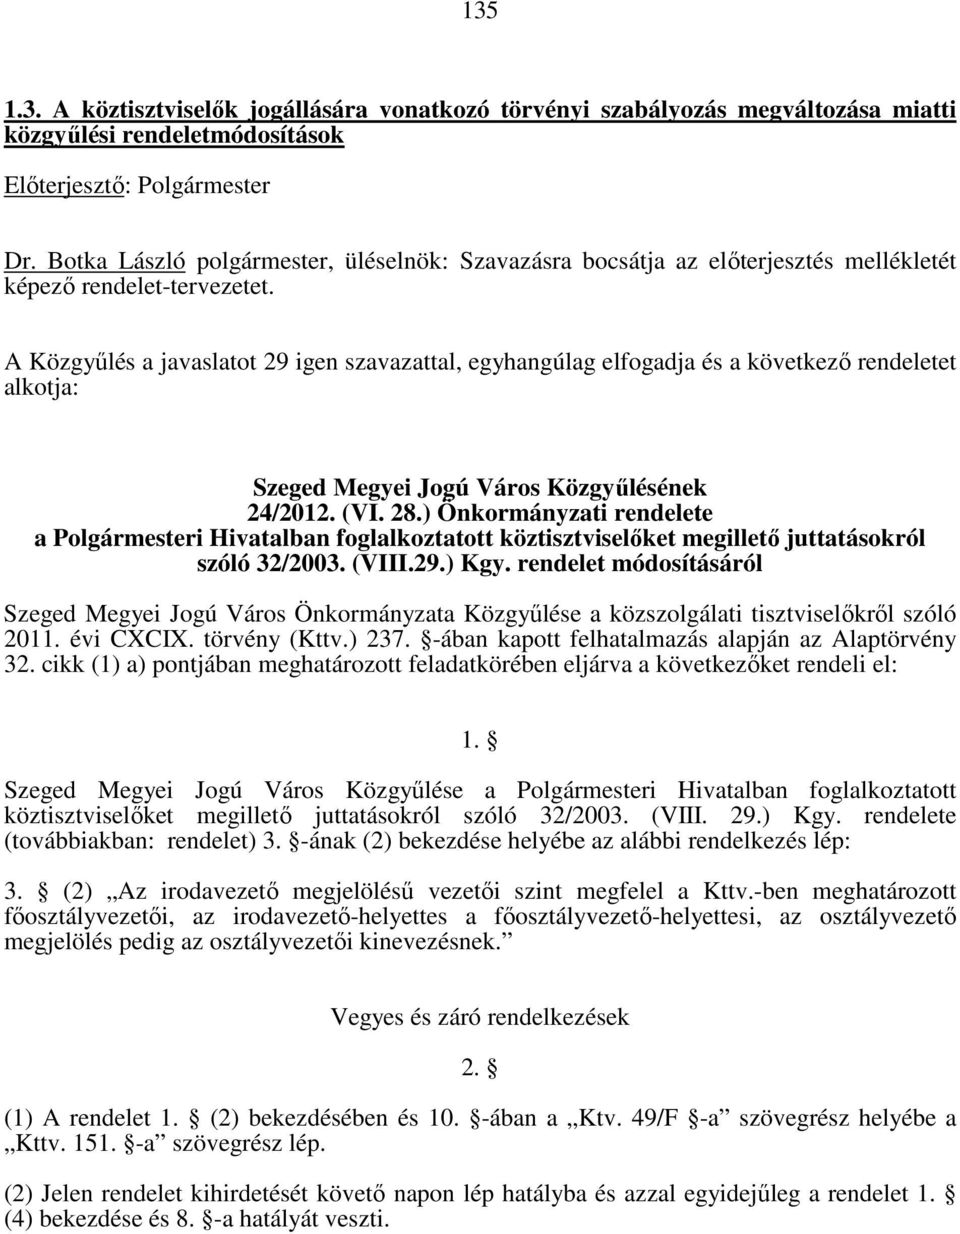 A Közgyűlés a javaslatot 29 igen szavazattal, egyhangúlag elfogadja és a következő rendeletet alkotja: Szeged Megyei Jogú Város Közgyűlésének 24/2012. (VI. 28.